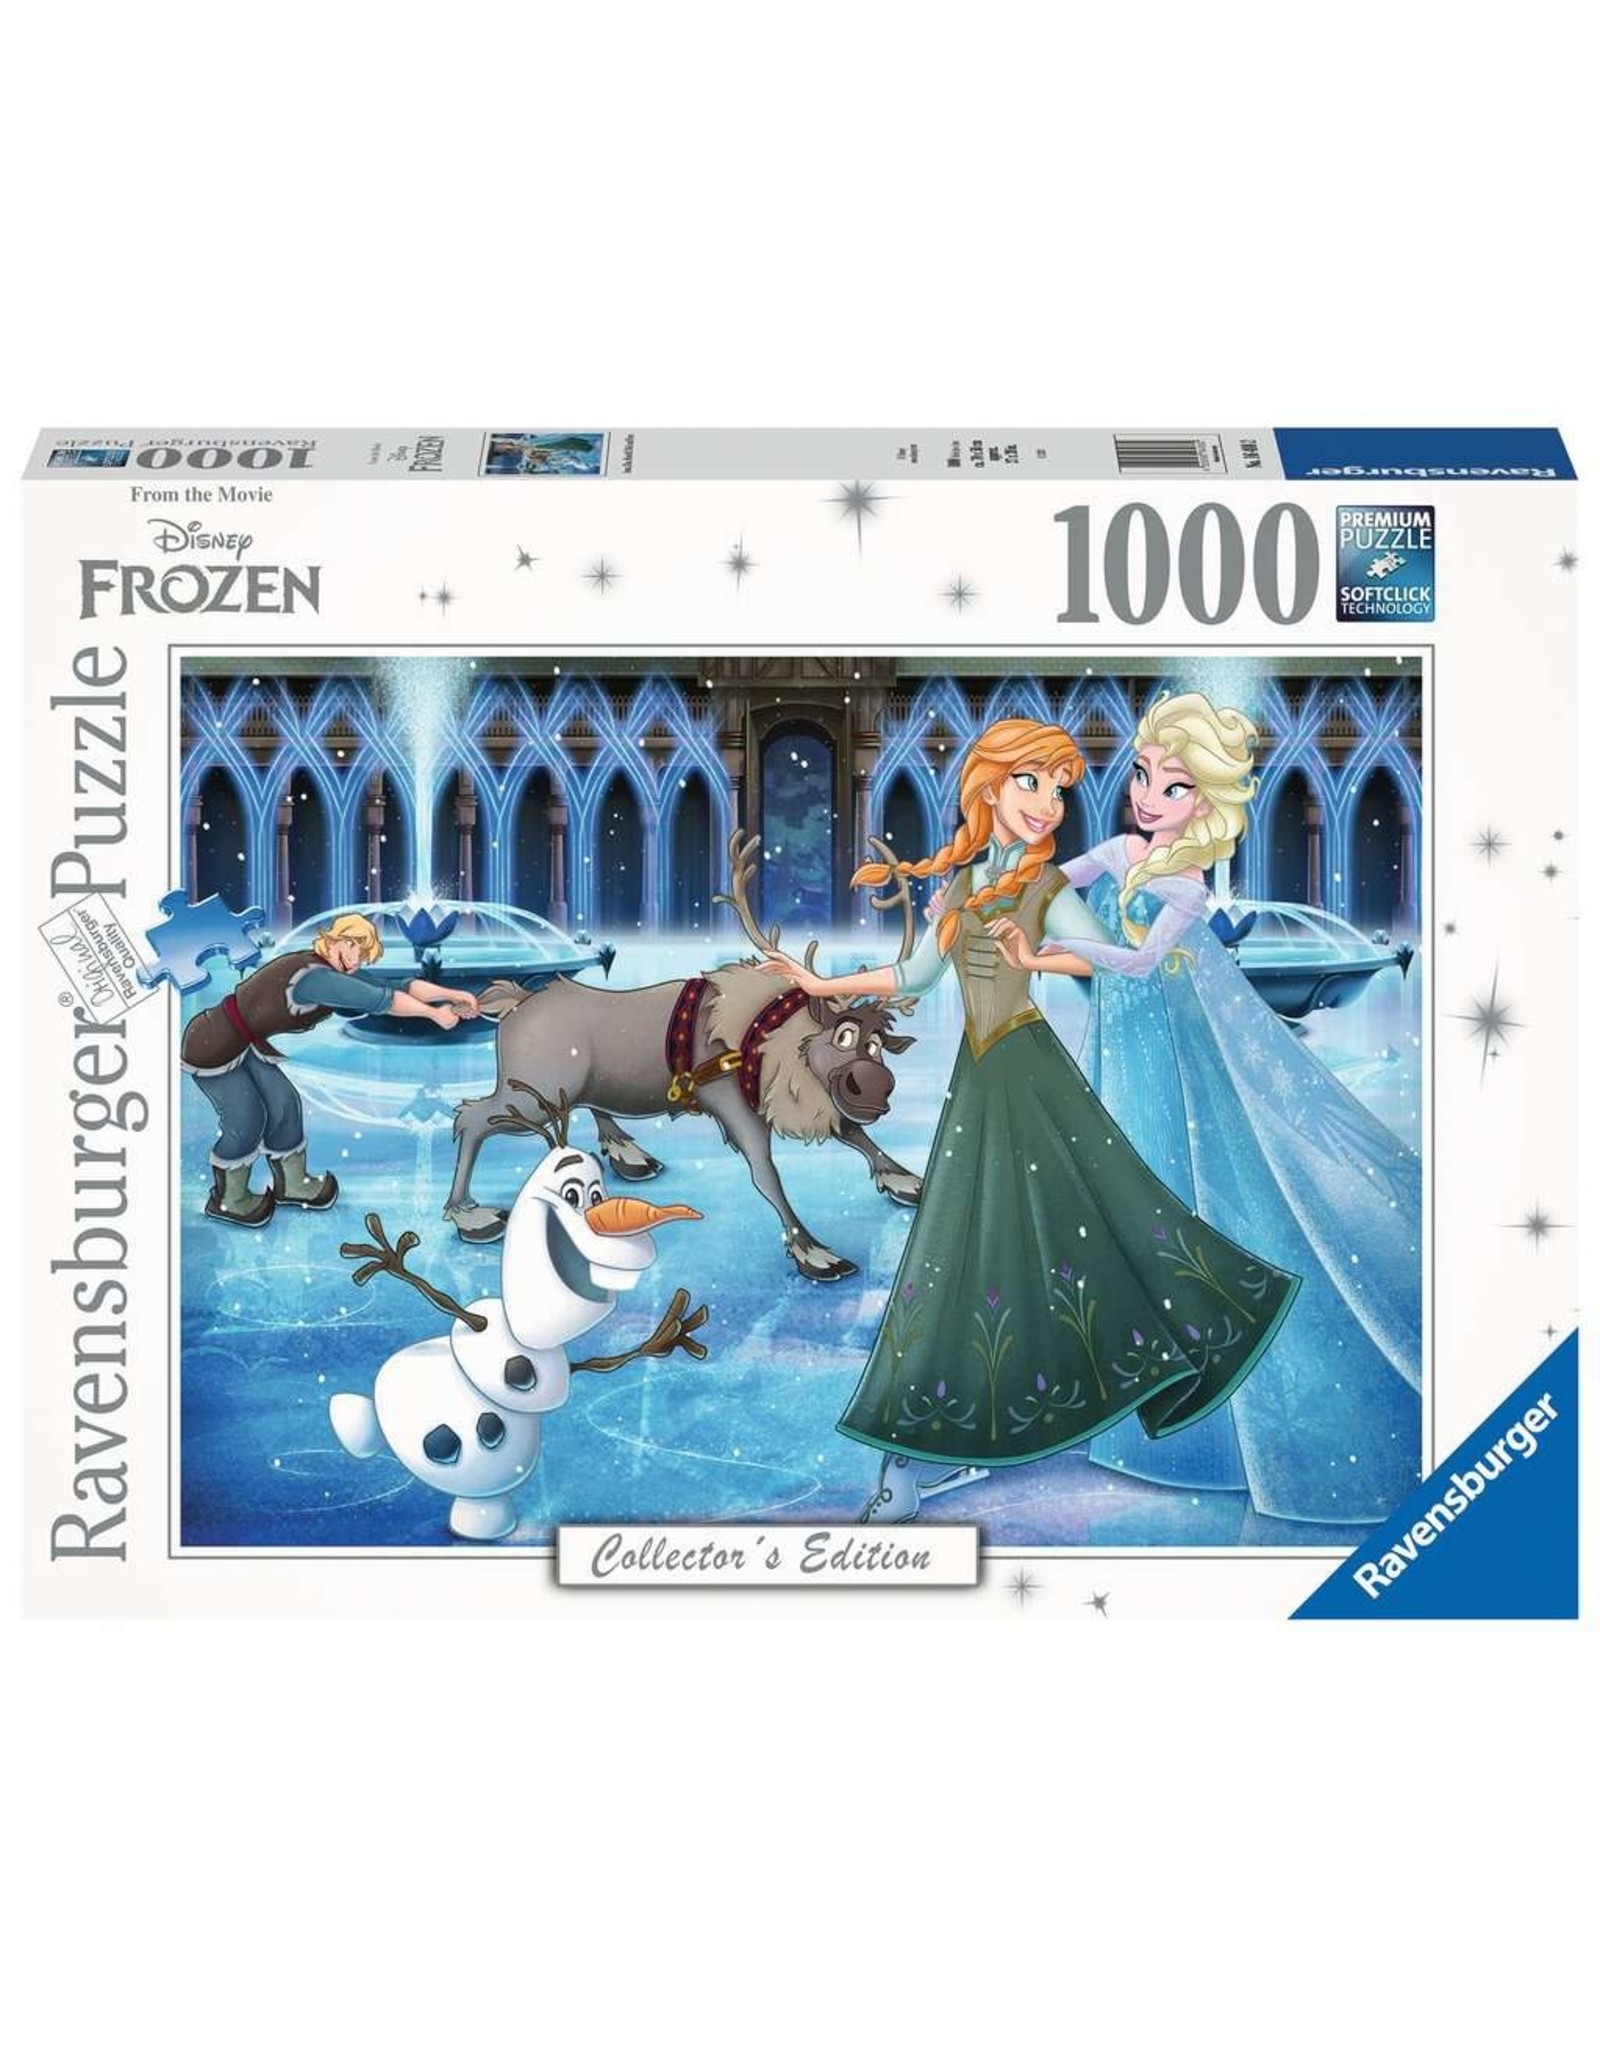 Ravensburger 1000 pcs. Frozen Puzzle